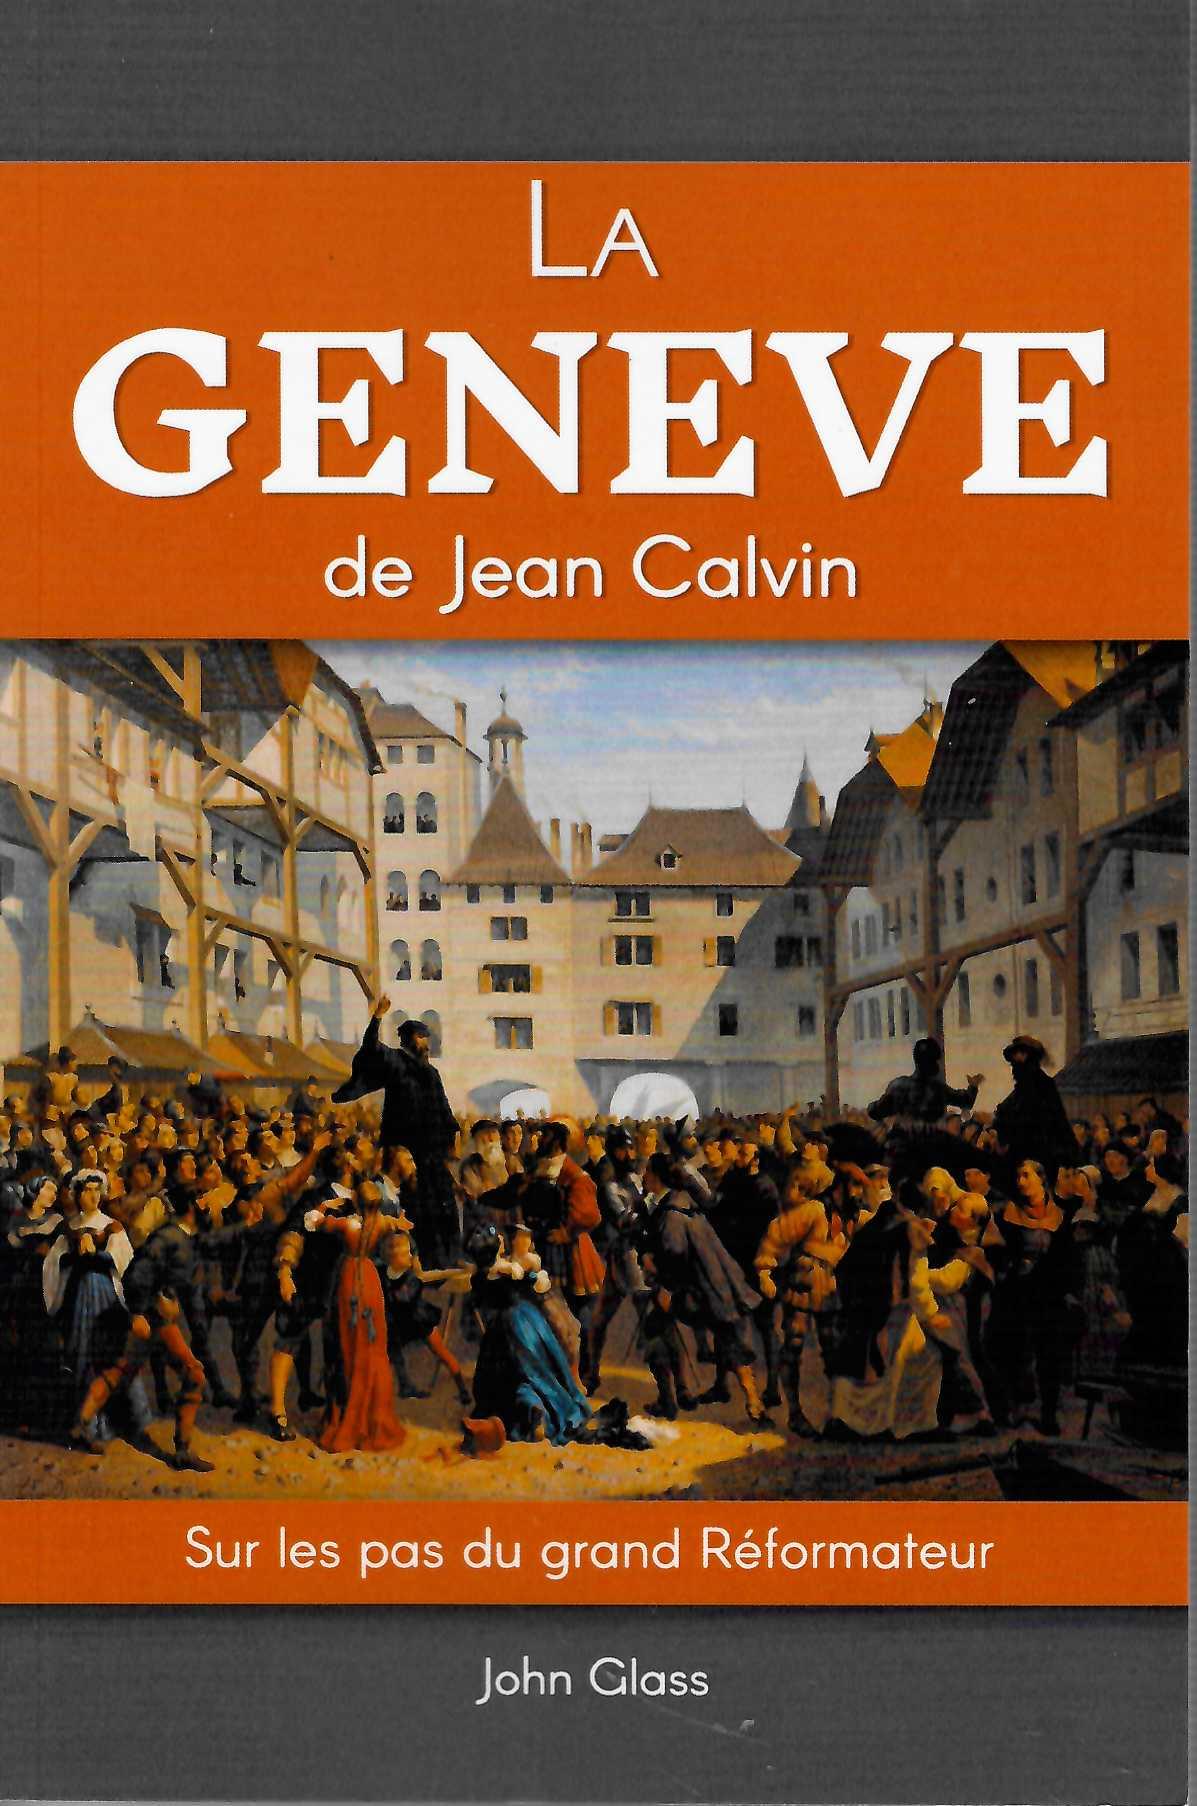 Genève de Jean Calvin (La) - Sur les pas du grand Réformateur